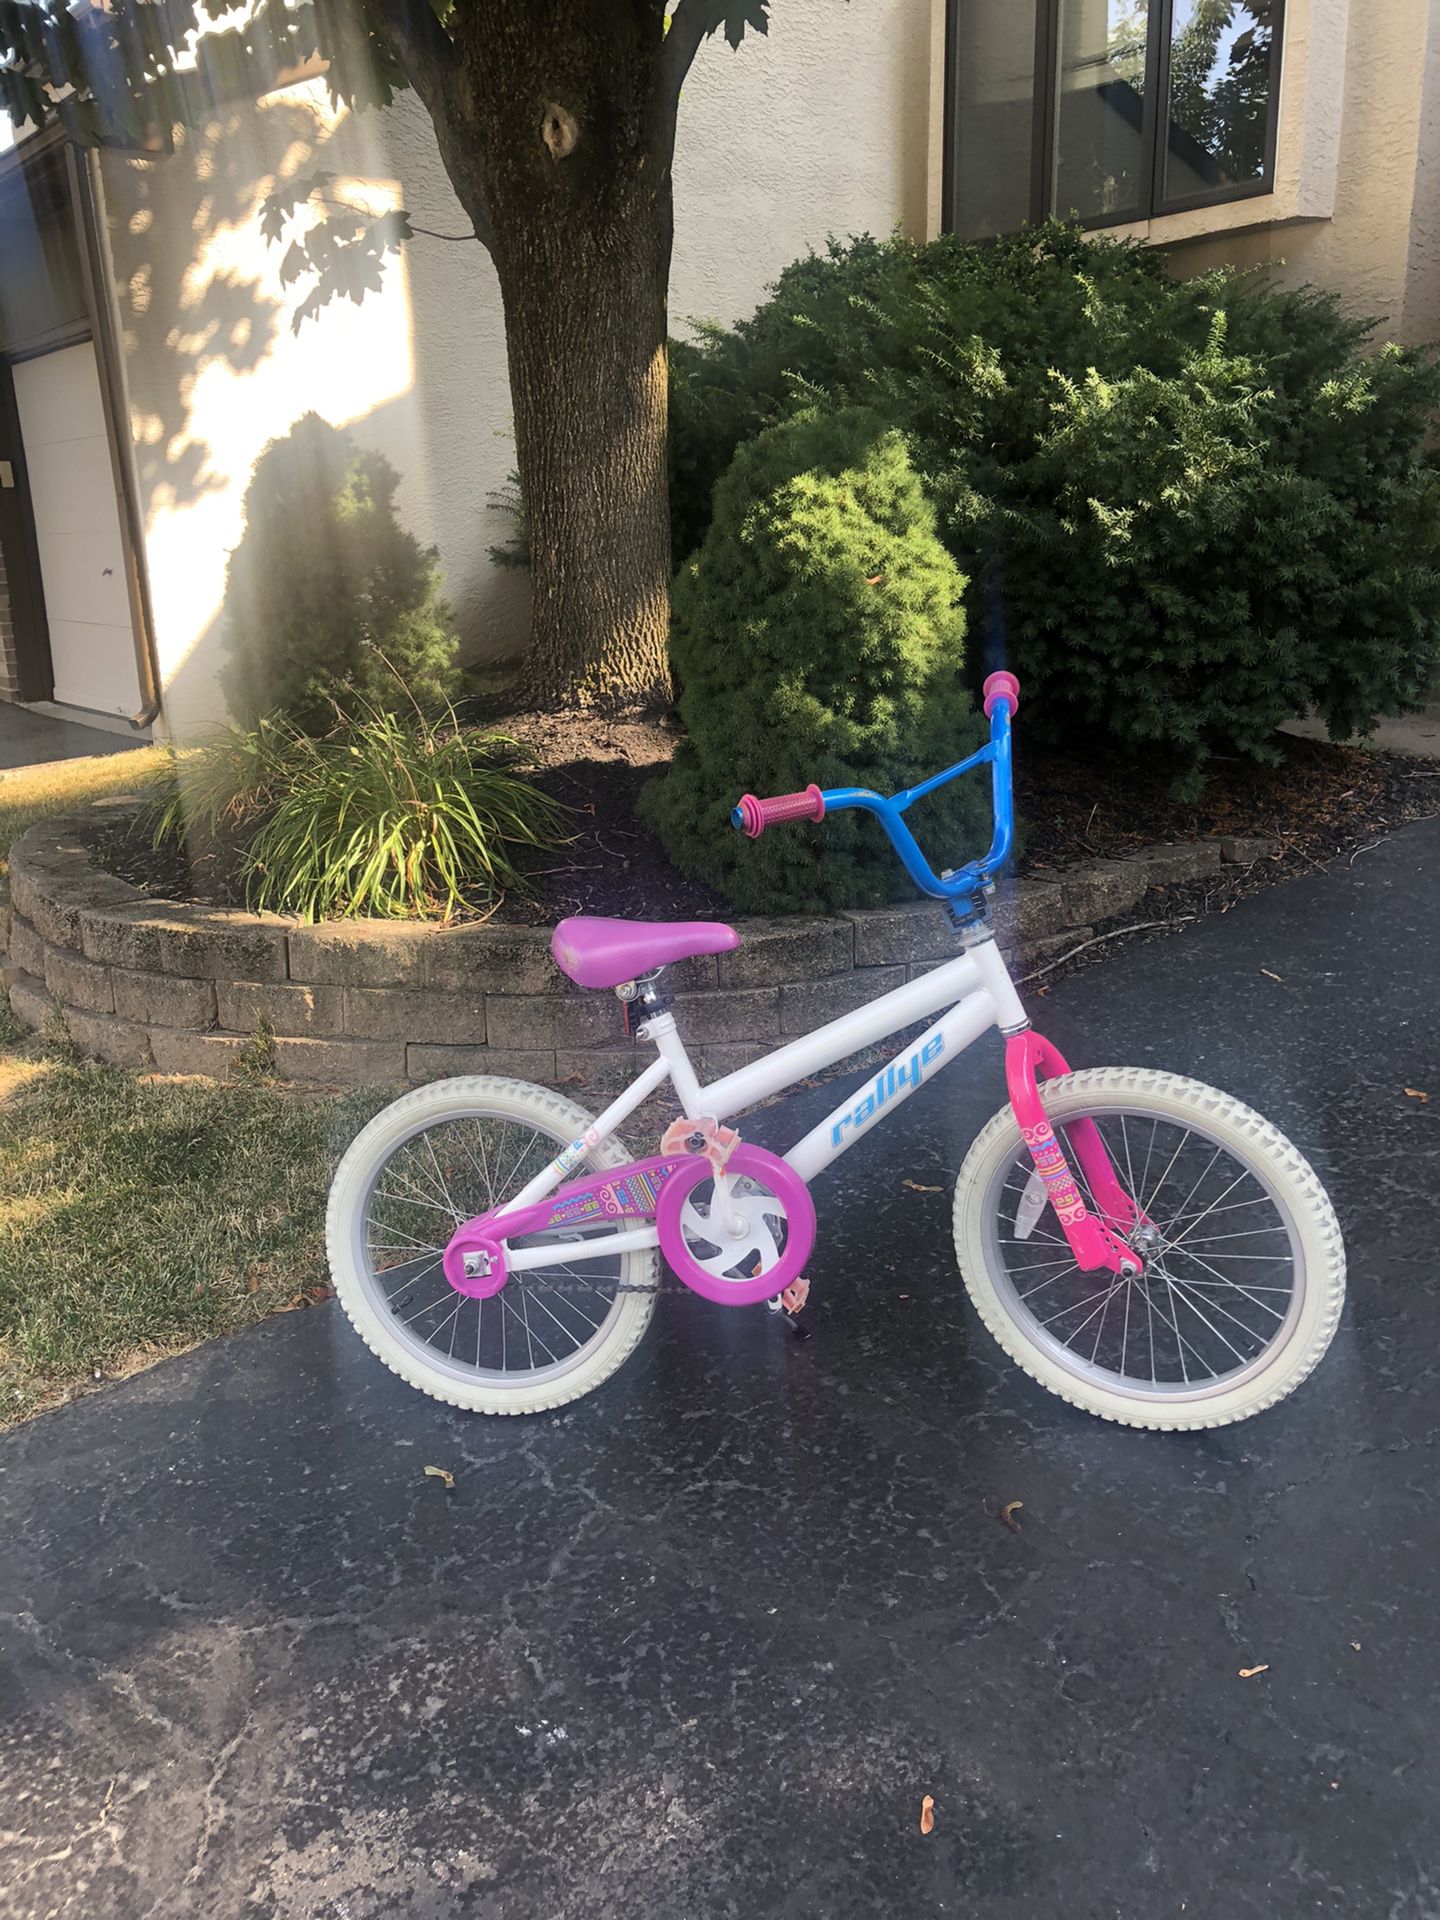 Child’s bike $50, needs new petals 18 inch